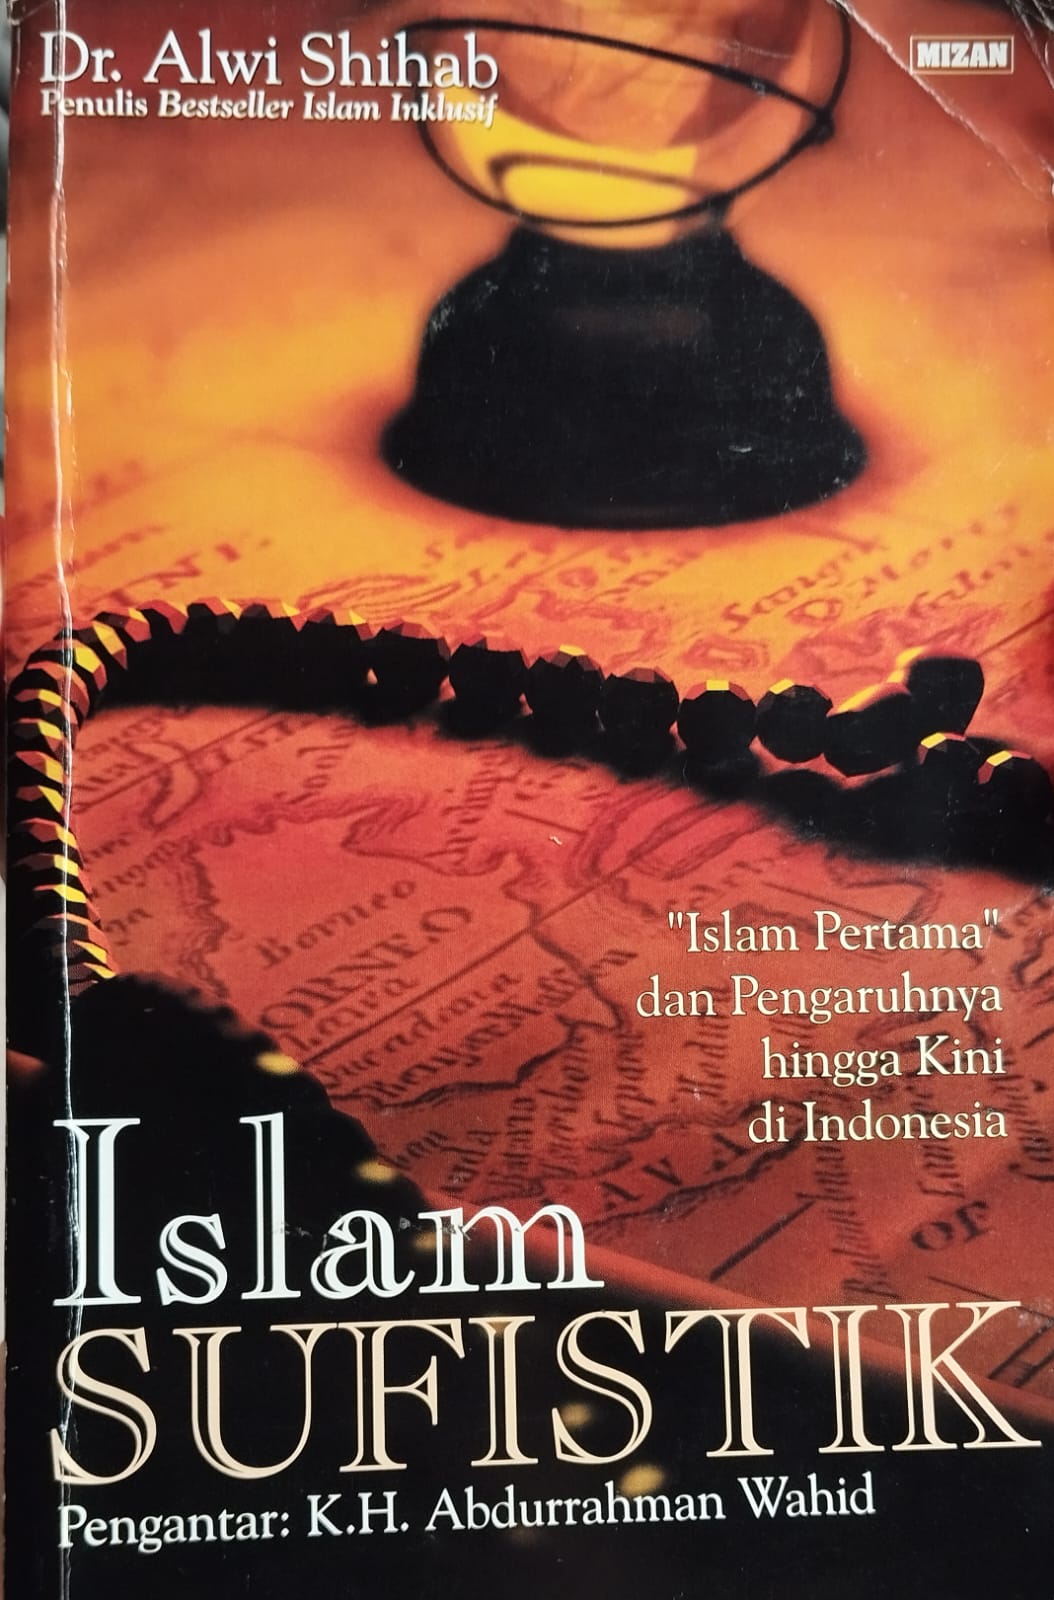 Islam Sufistik – “Islam Pertama” dan Pengaruhnya hingga Kini di Indonesia